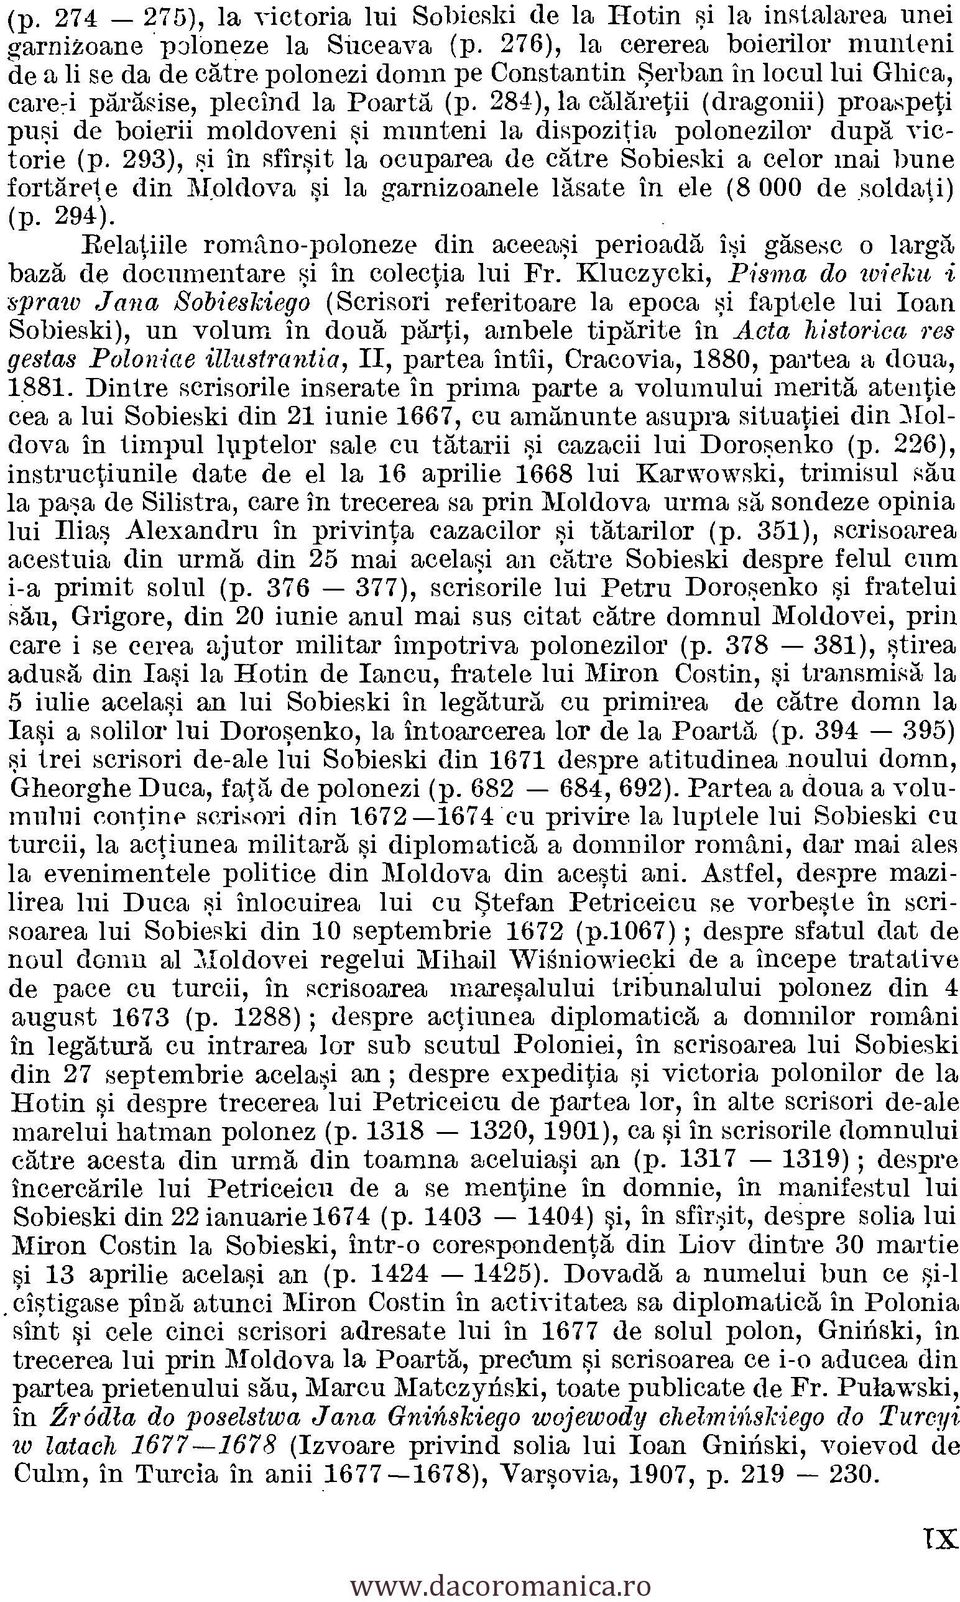 293), si in sfirsit la ocuparea de catre Sobieski a celor mai bune fortarete din Moldova si In garnizoanele lasate in ele (8 000 de soldati) (p. 294).